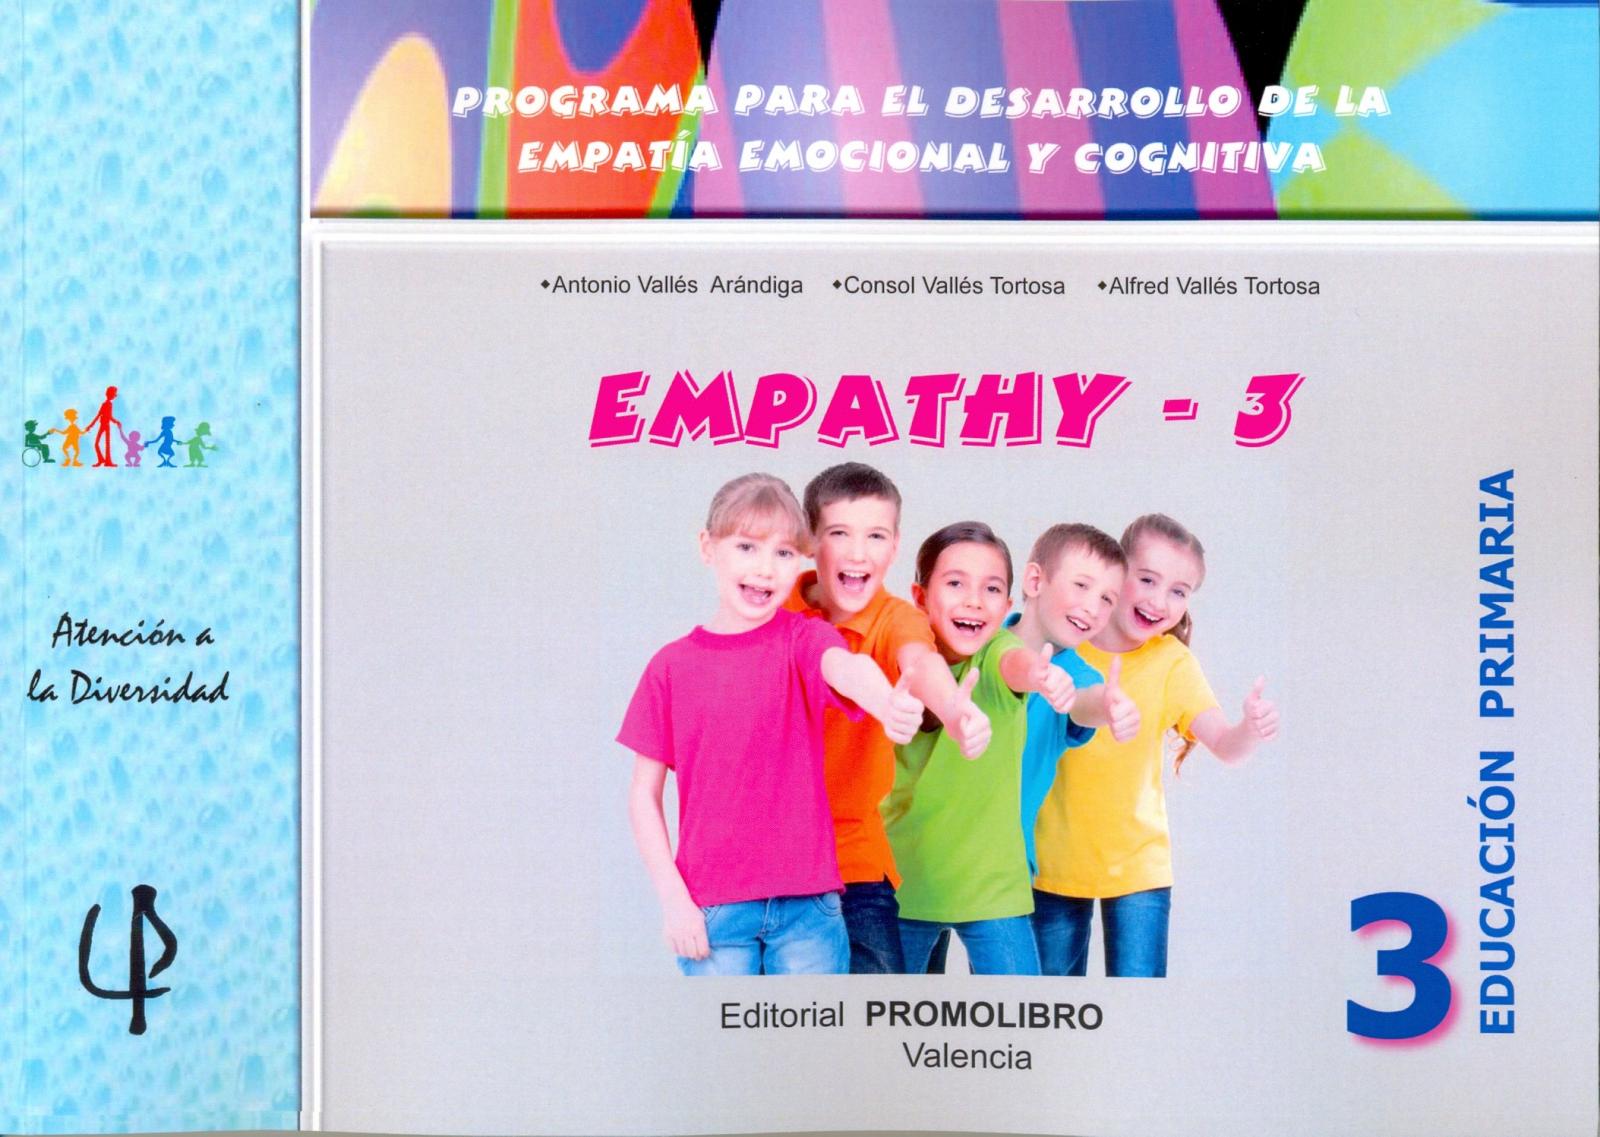 228.-EMPATHY-3. Programa para el desarrollo de la empatía emocional y cognitiva. 3º Educación Primaria